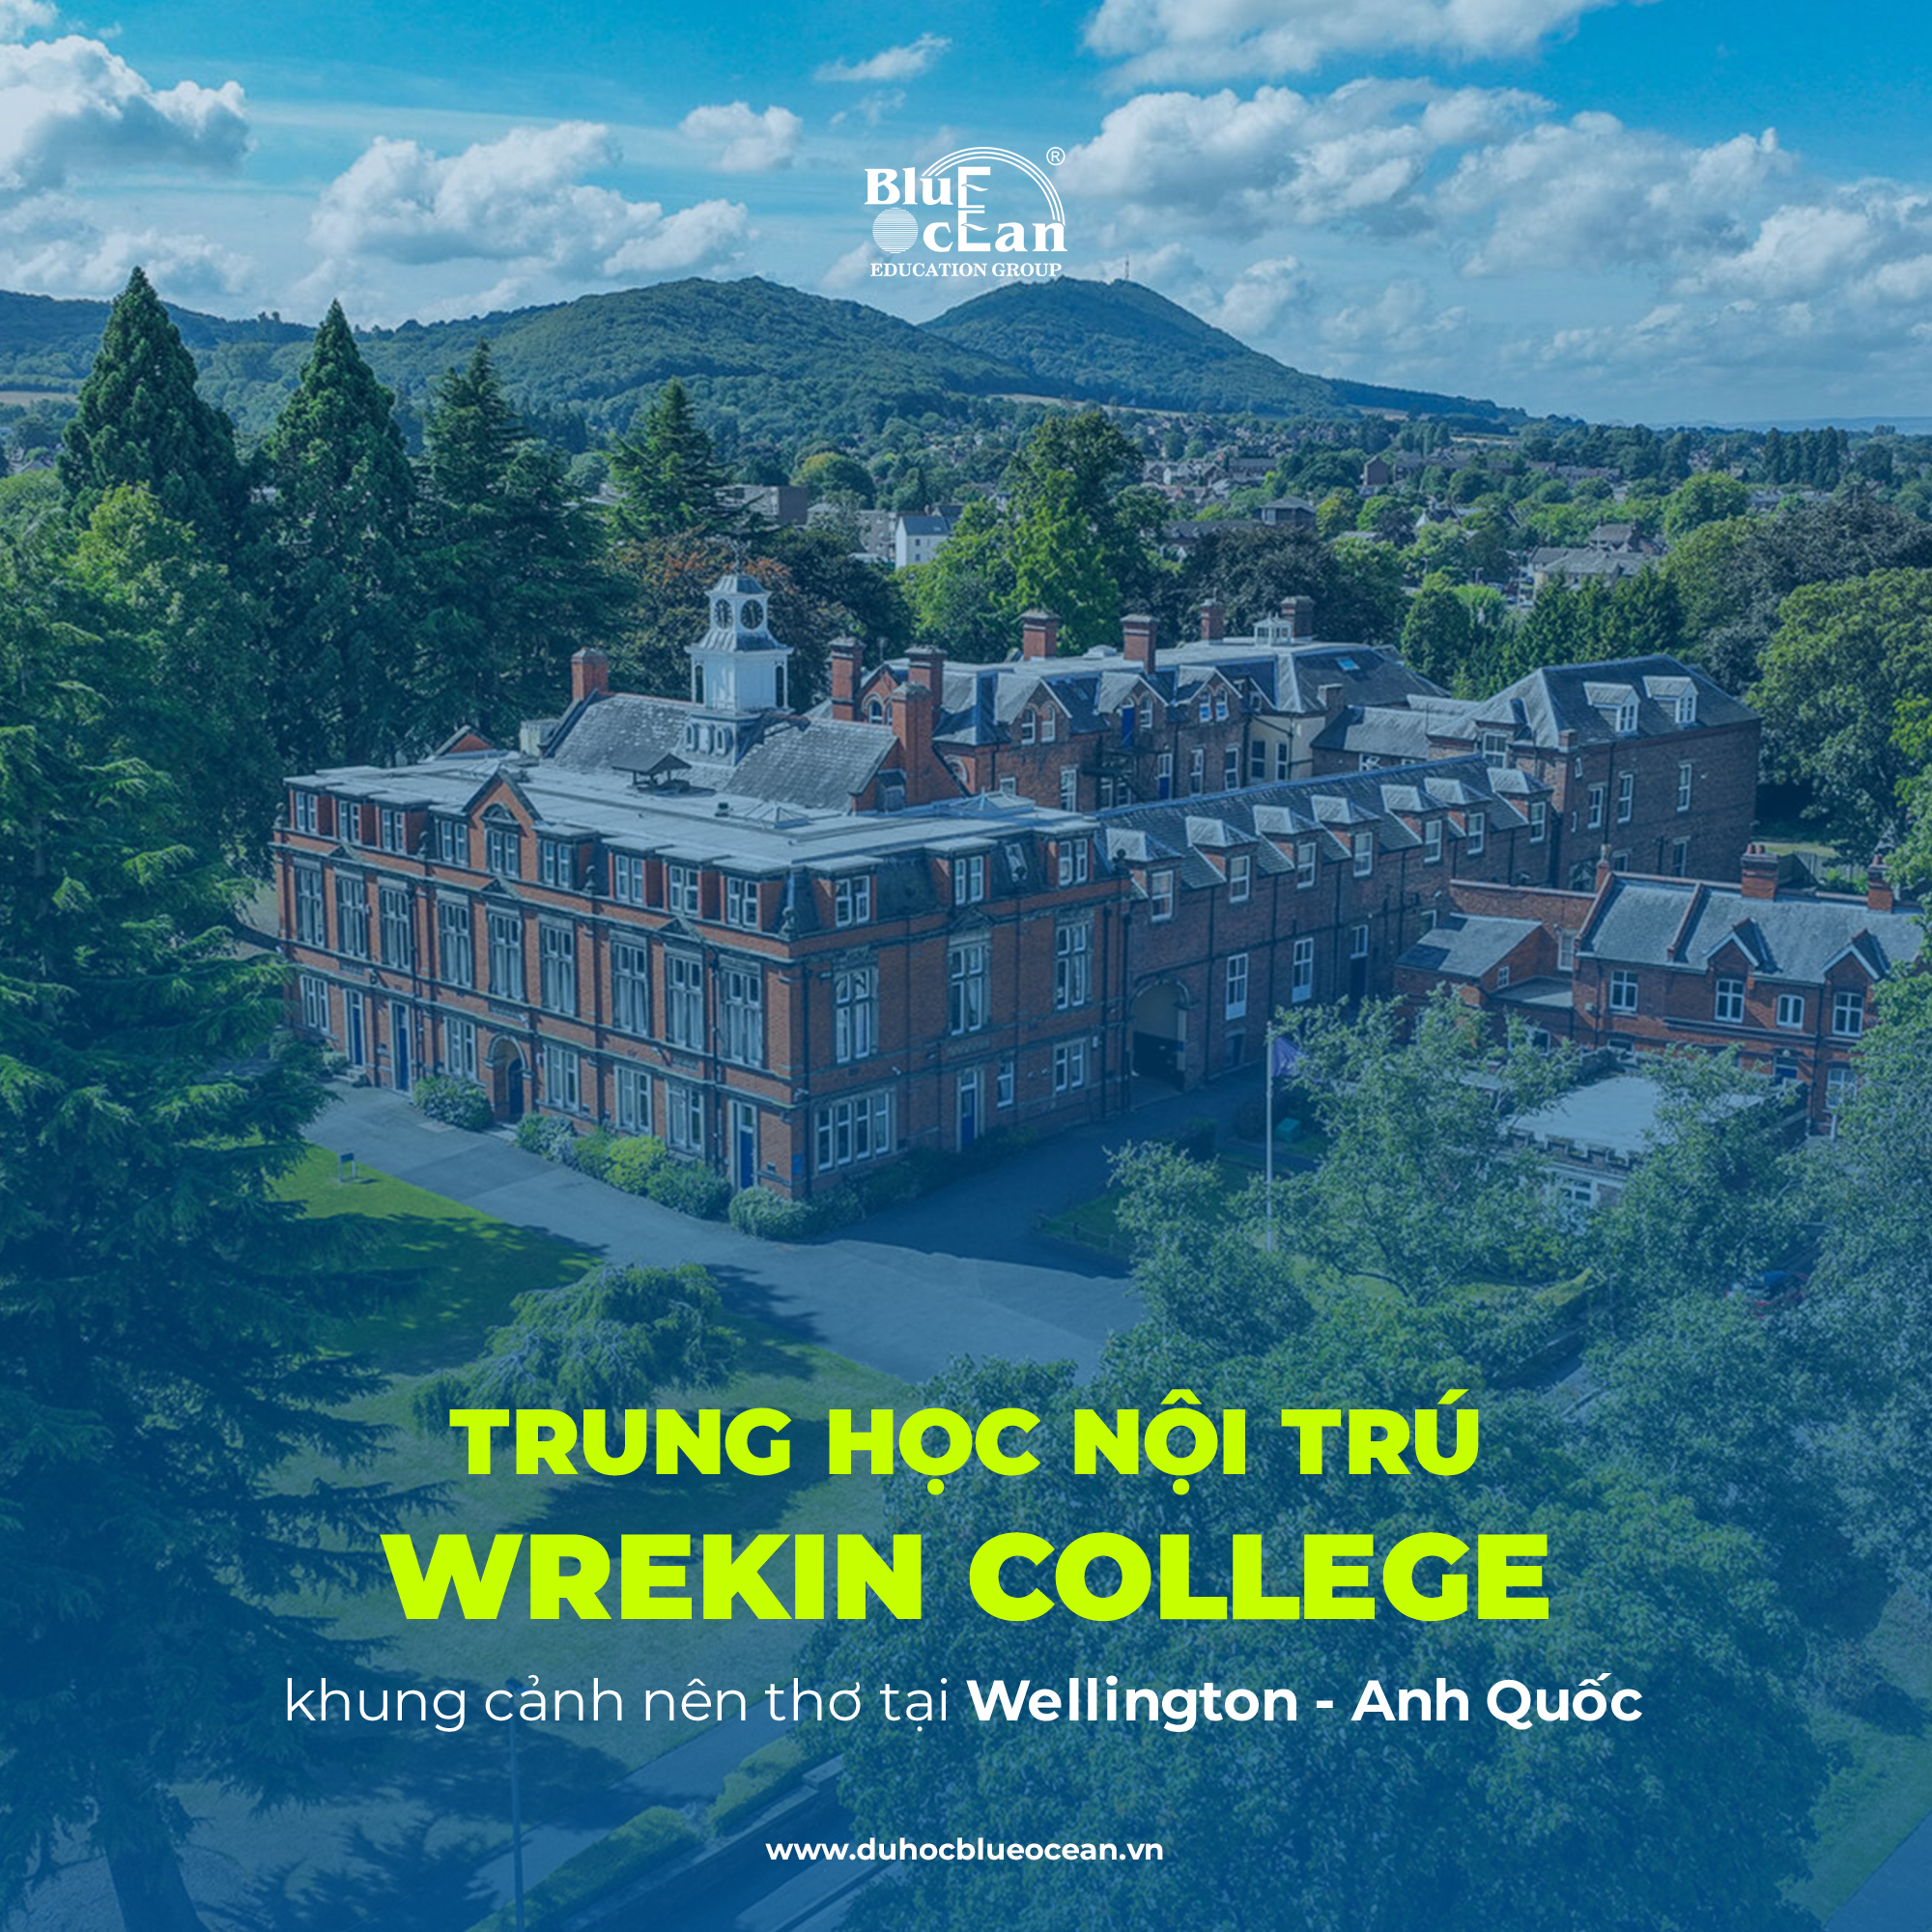 Du học Anh Quốc - Trung học nội trú Wrekin College với khung cảnh nên thơ tại Wellington